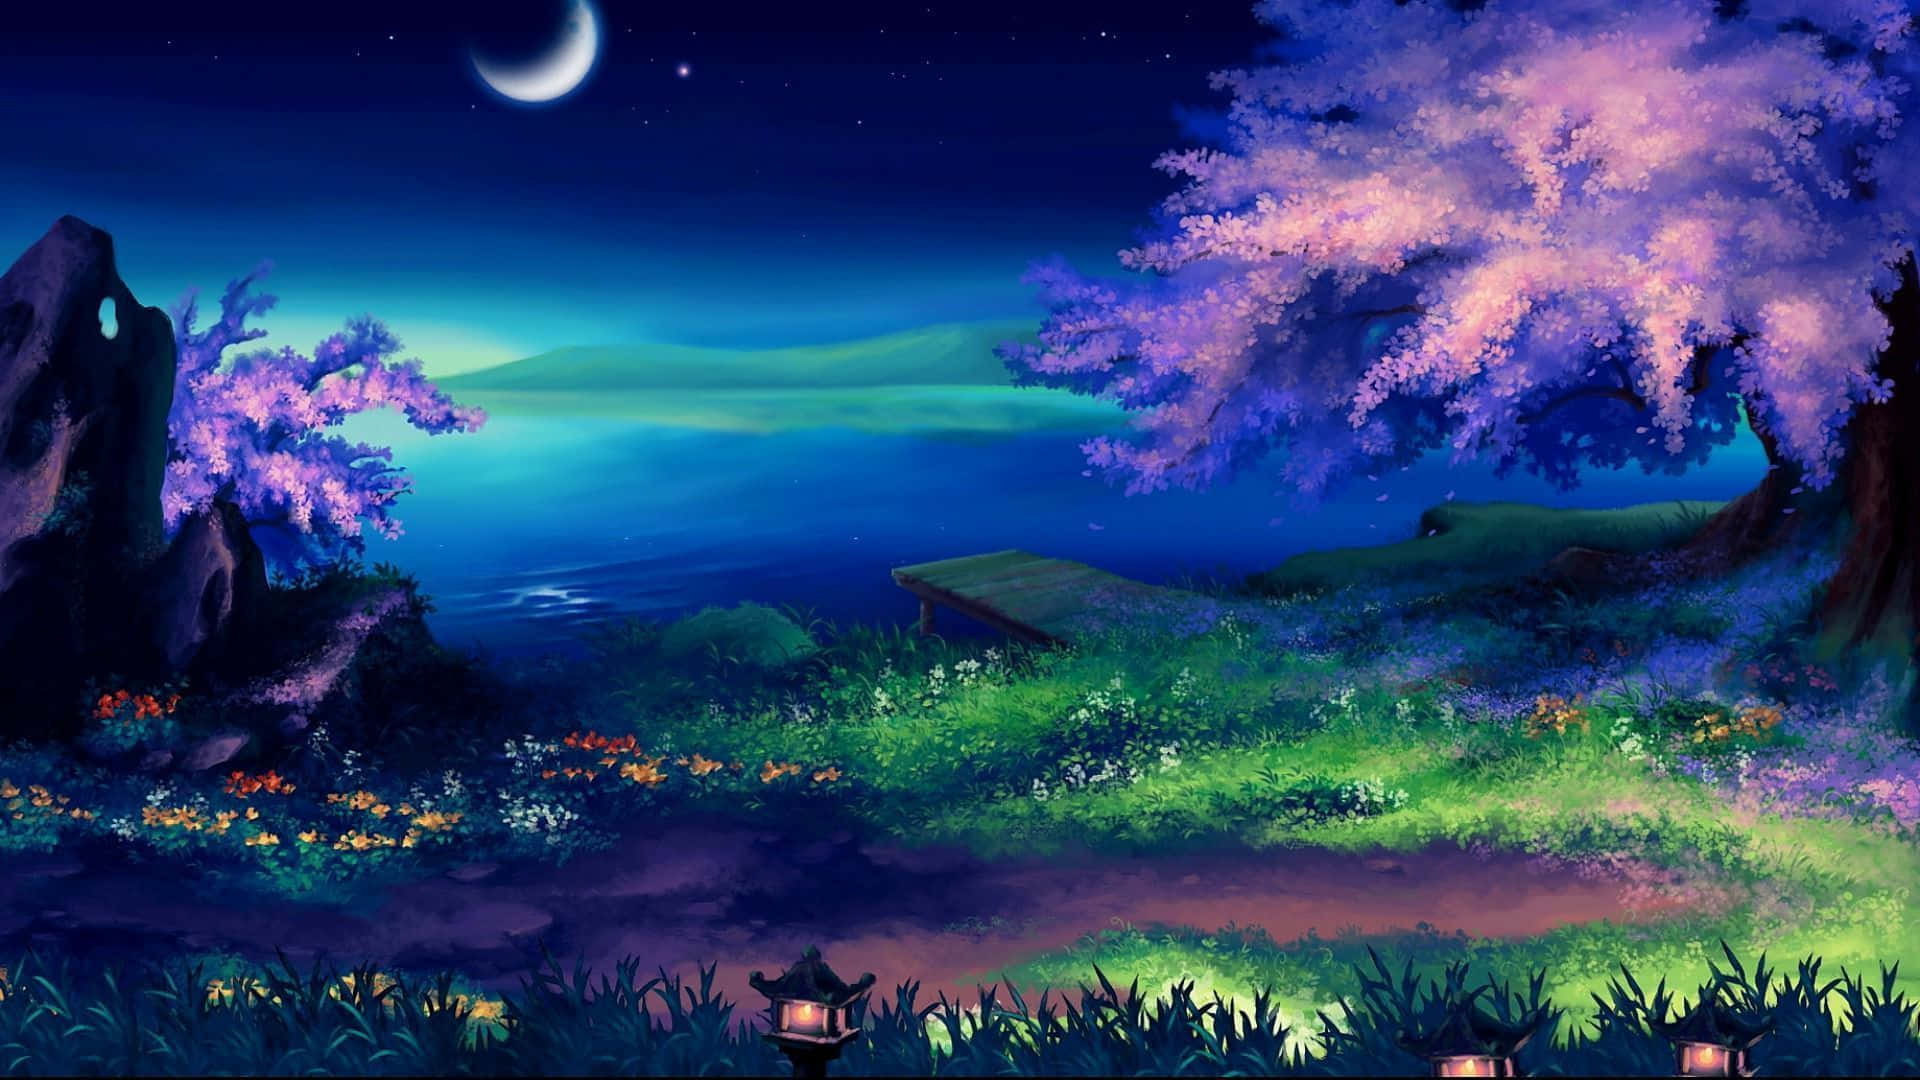 The Epic Naruto Landscape Wallpaper